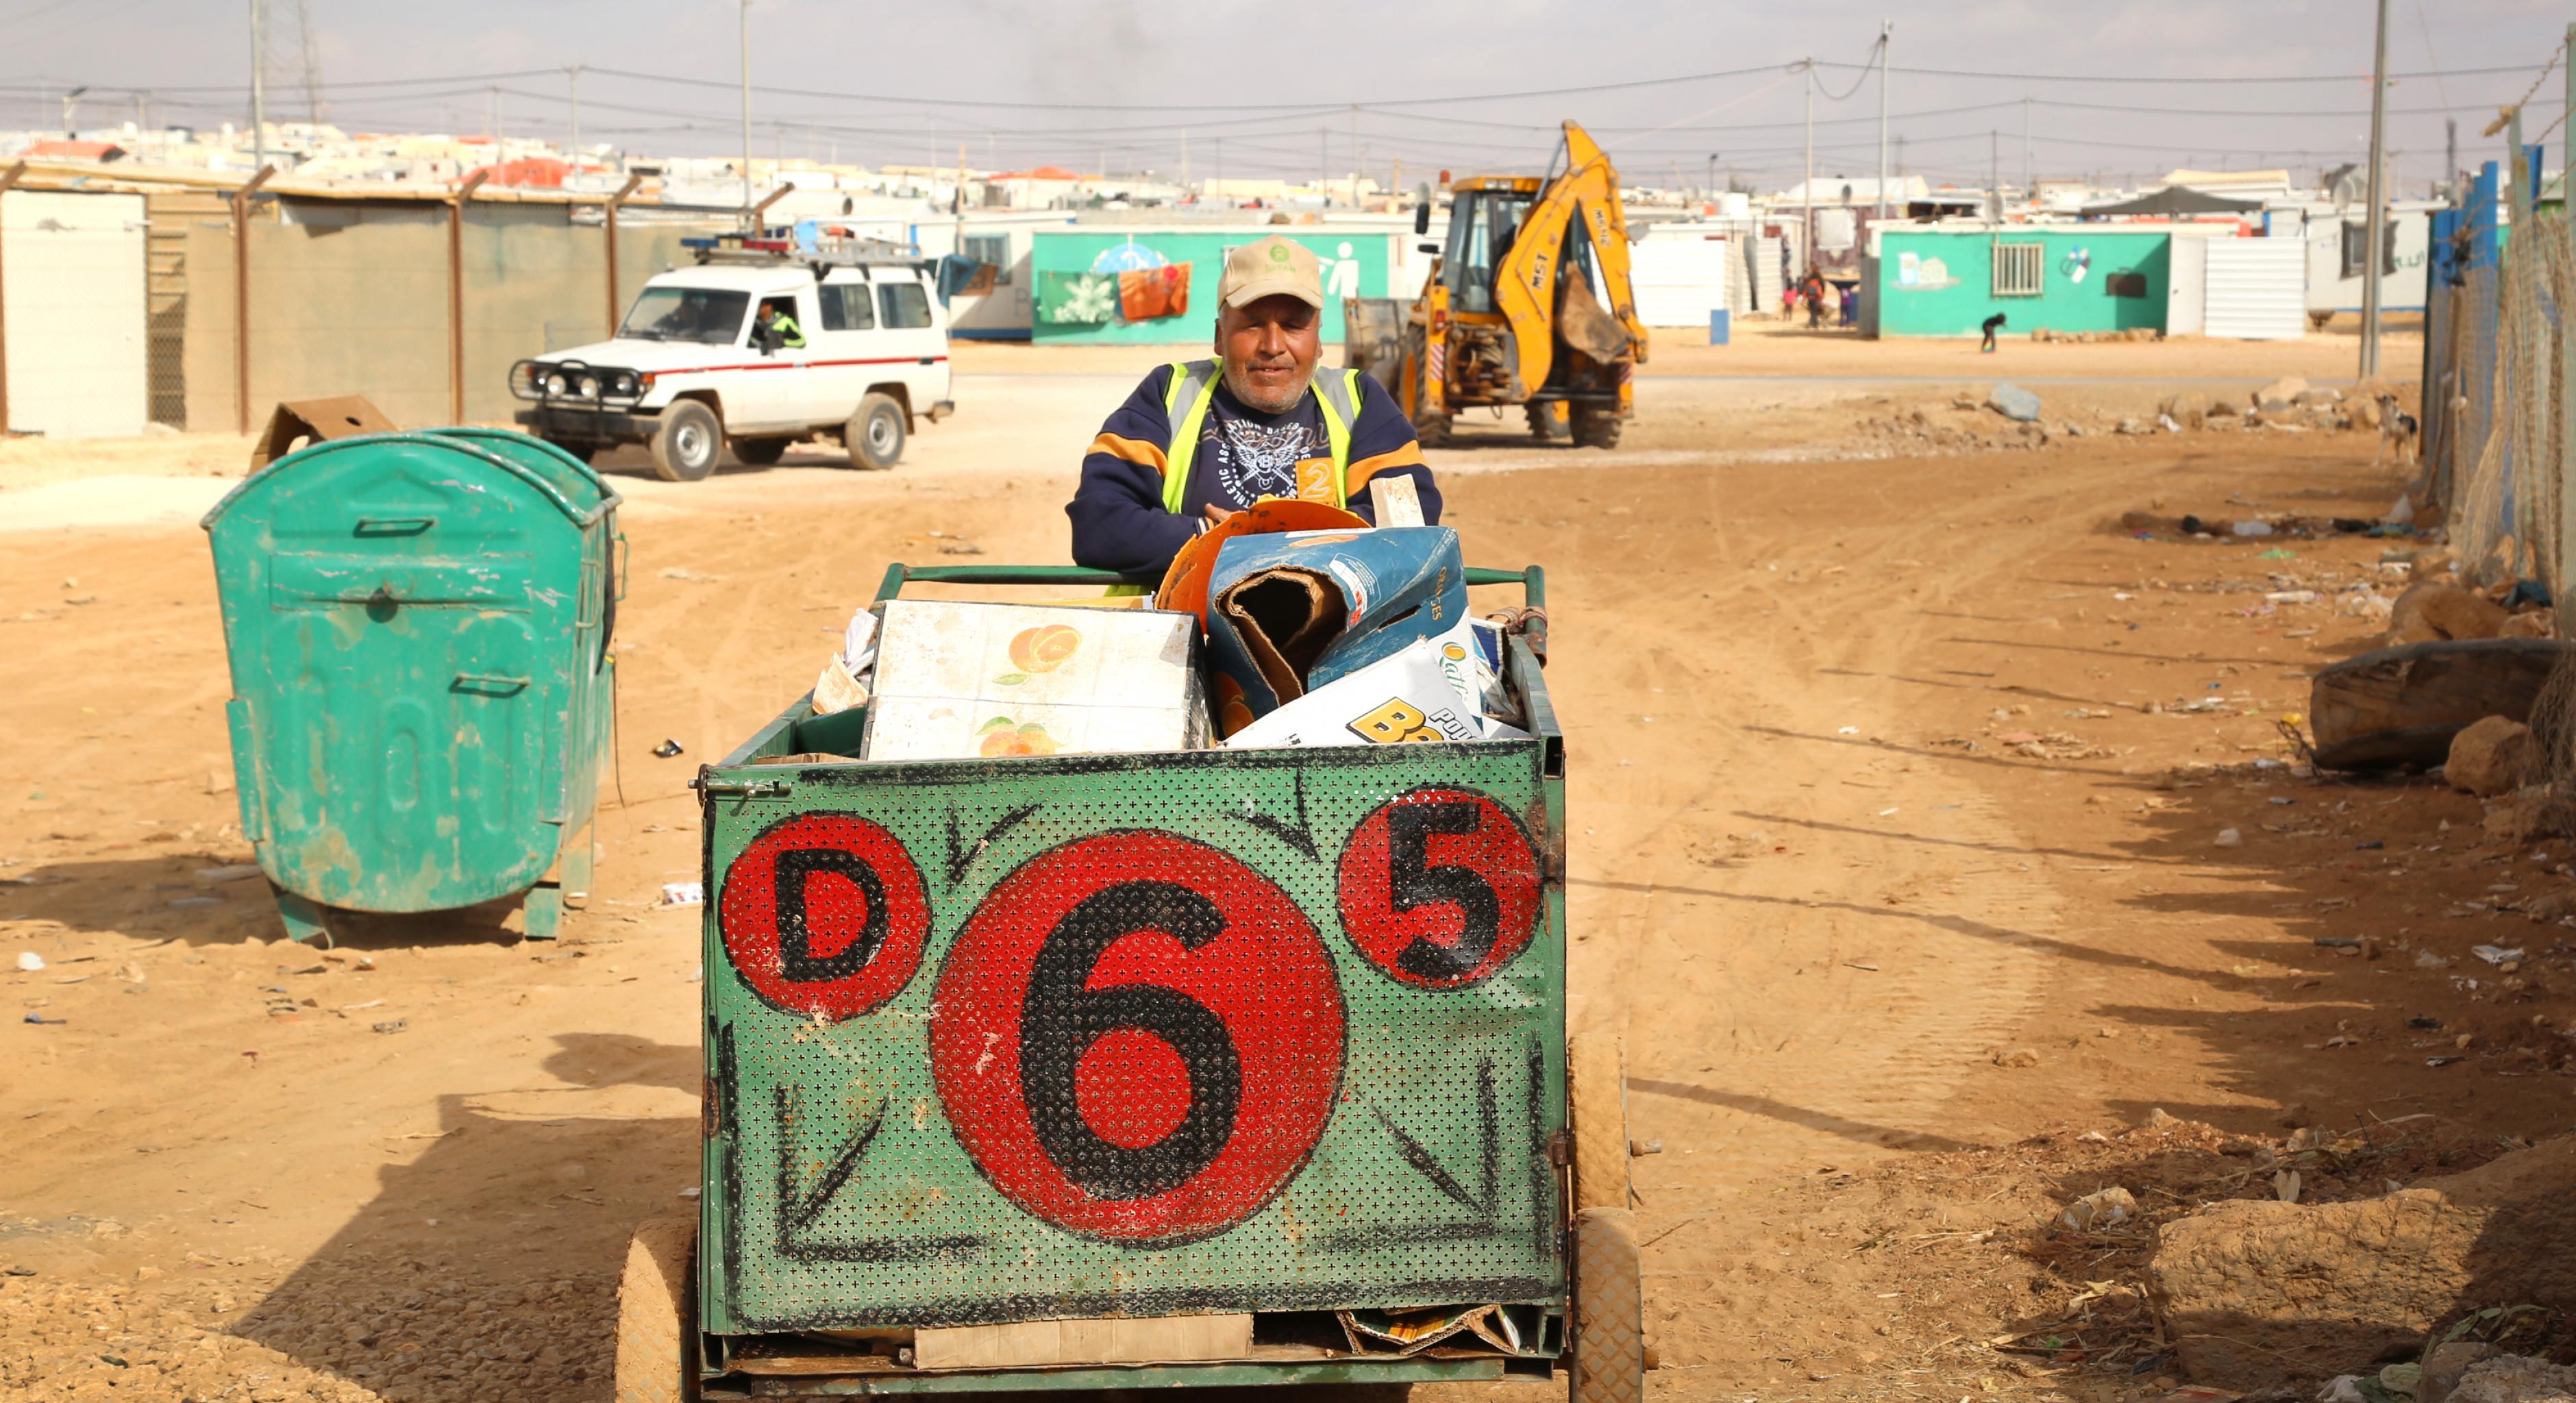 Ein Mann mit Oxfam-Mütze sammelt Abfall in einem Karren.